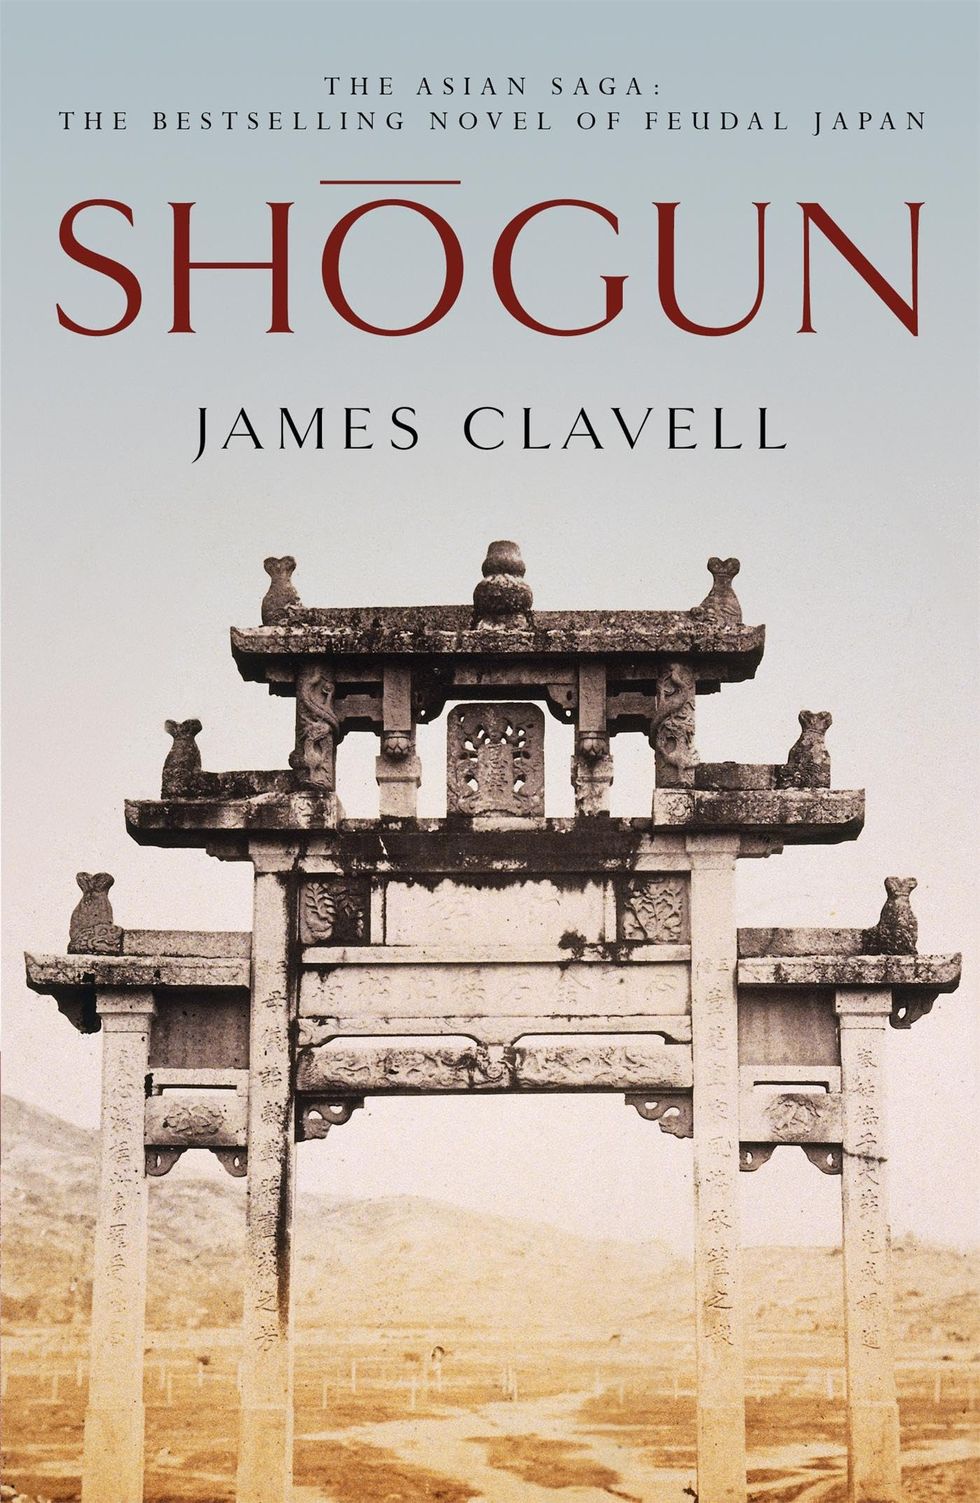 Shogun: The First Novel of the Asian Saga